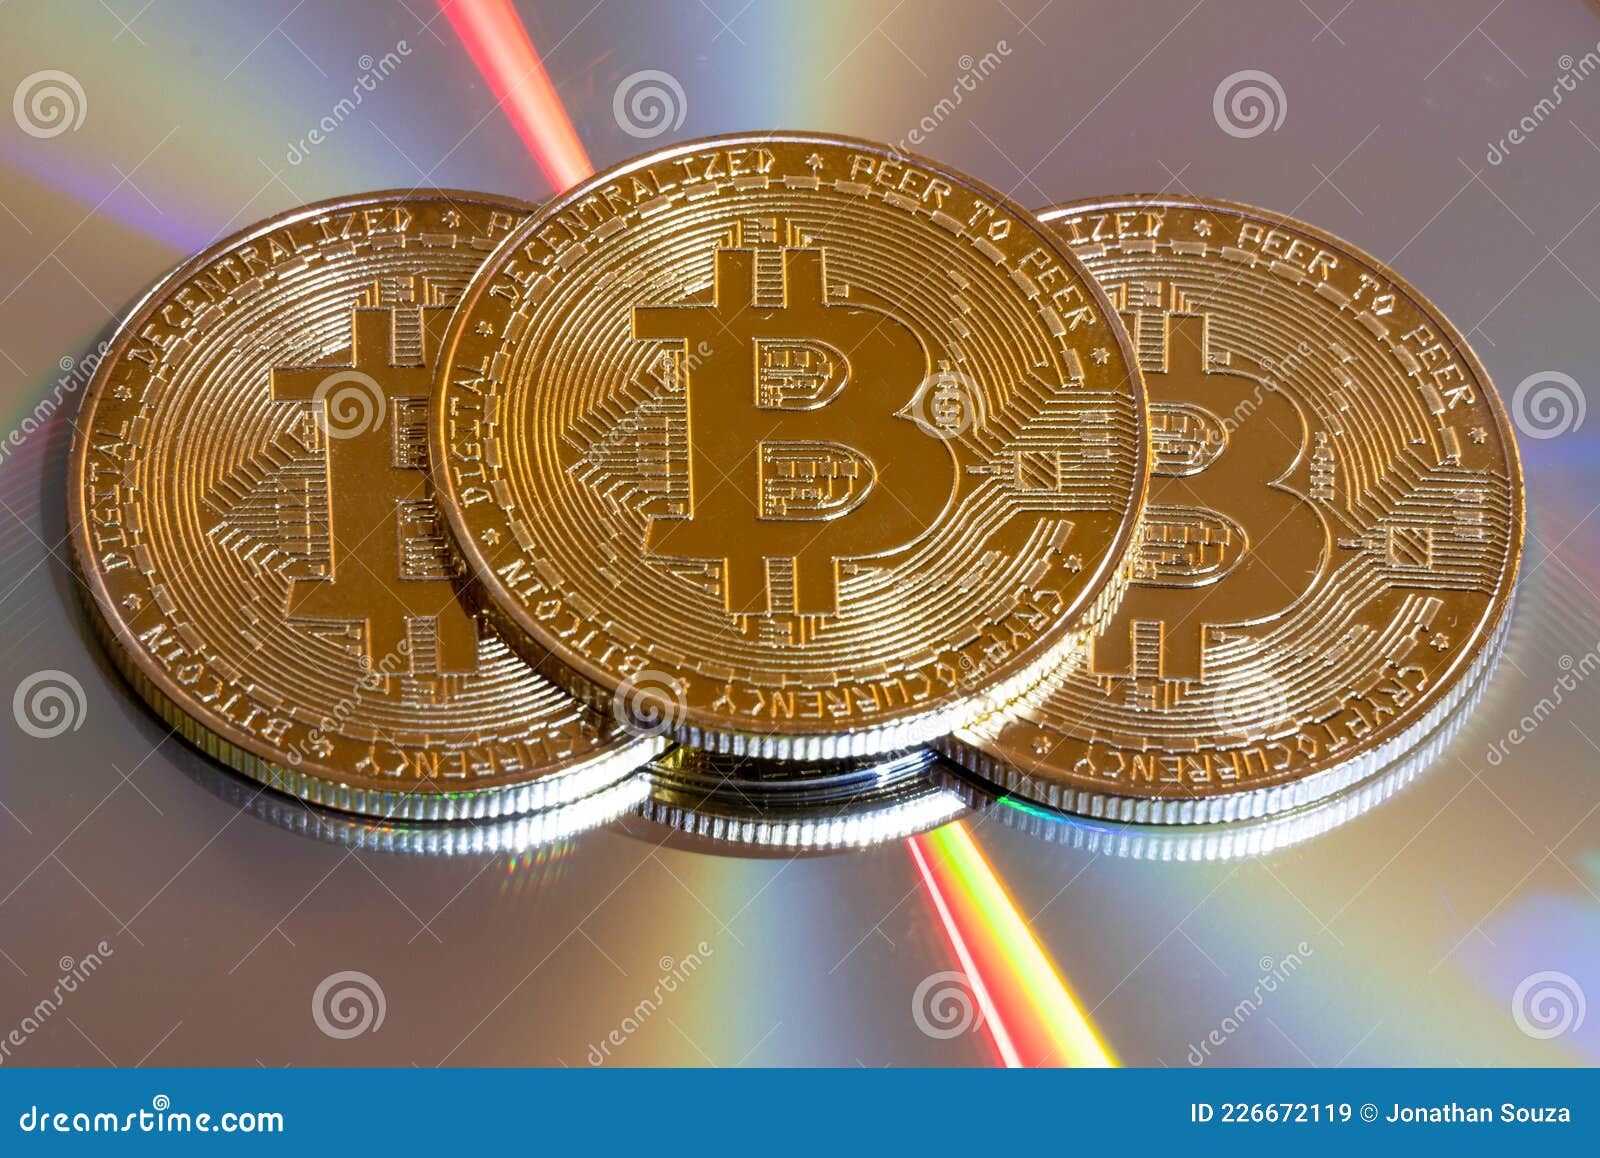 Bitcoin cd crypto ledger